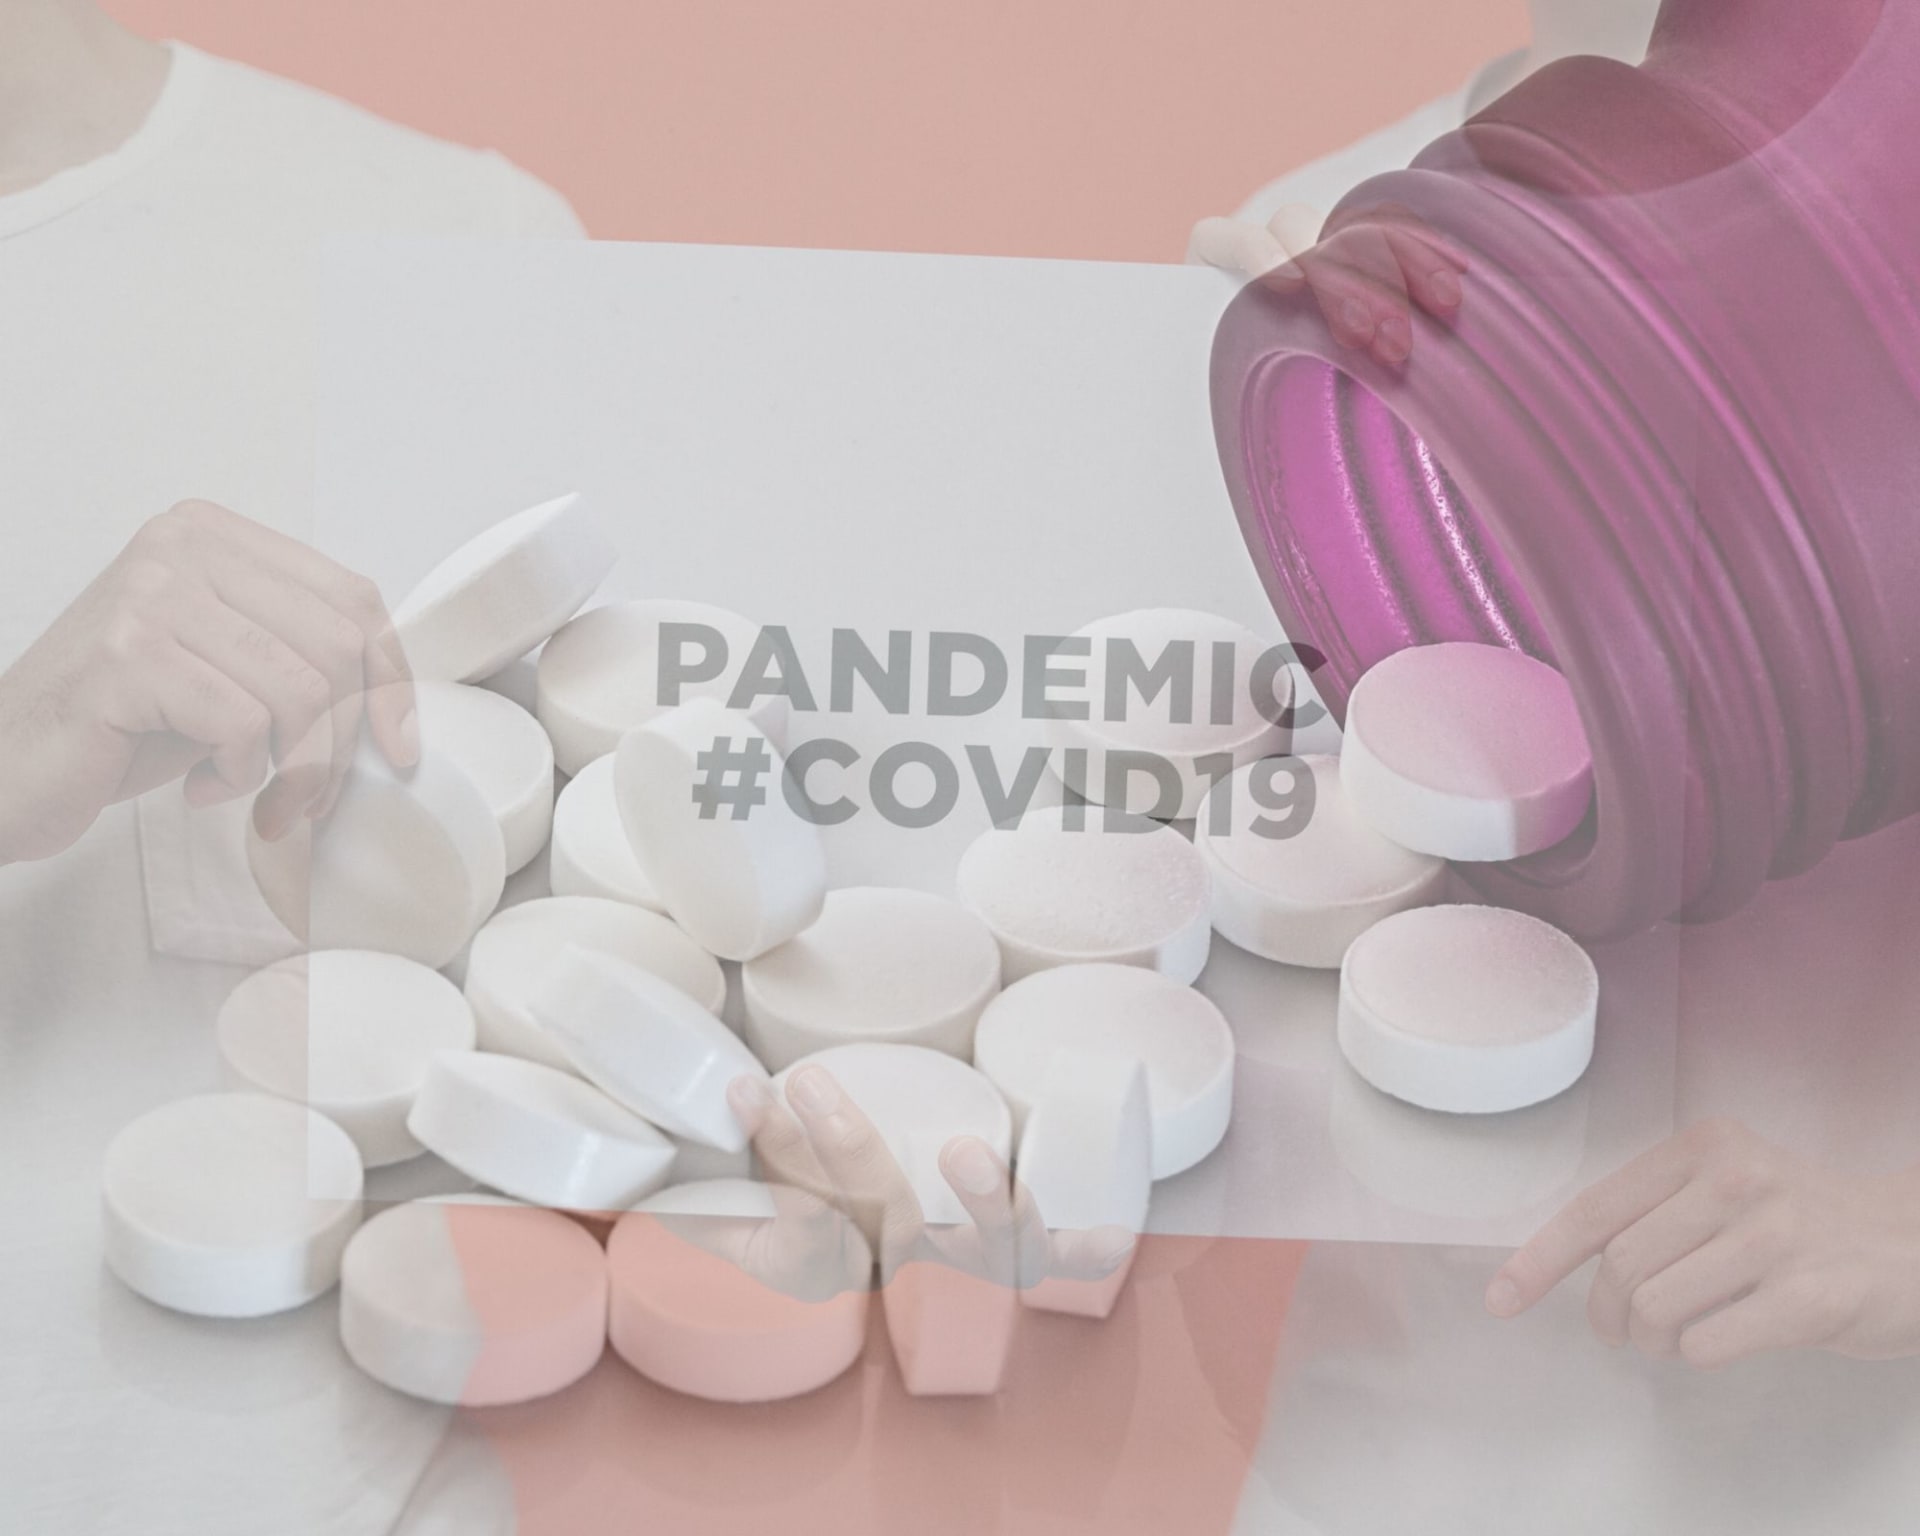 Lék favipiravir podle ministra zdravotnictví dorazí do Česka příští týden